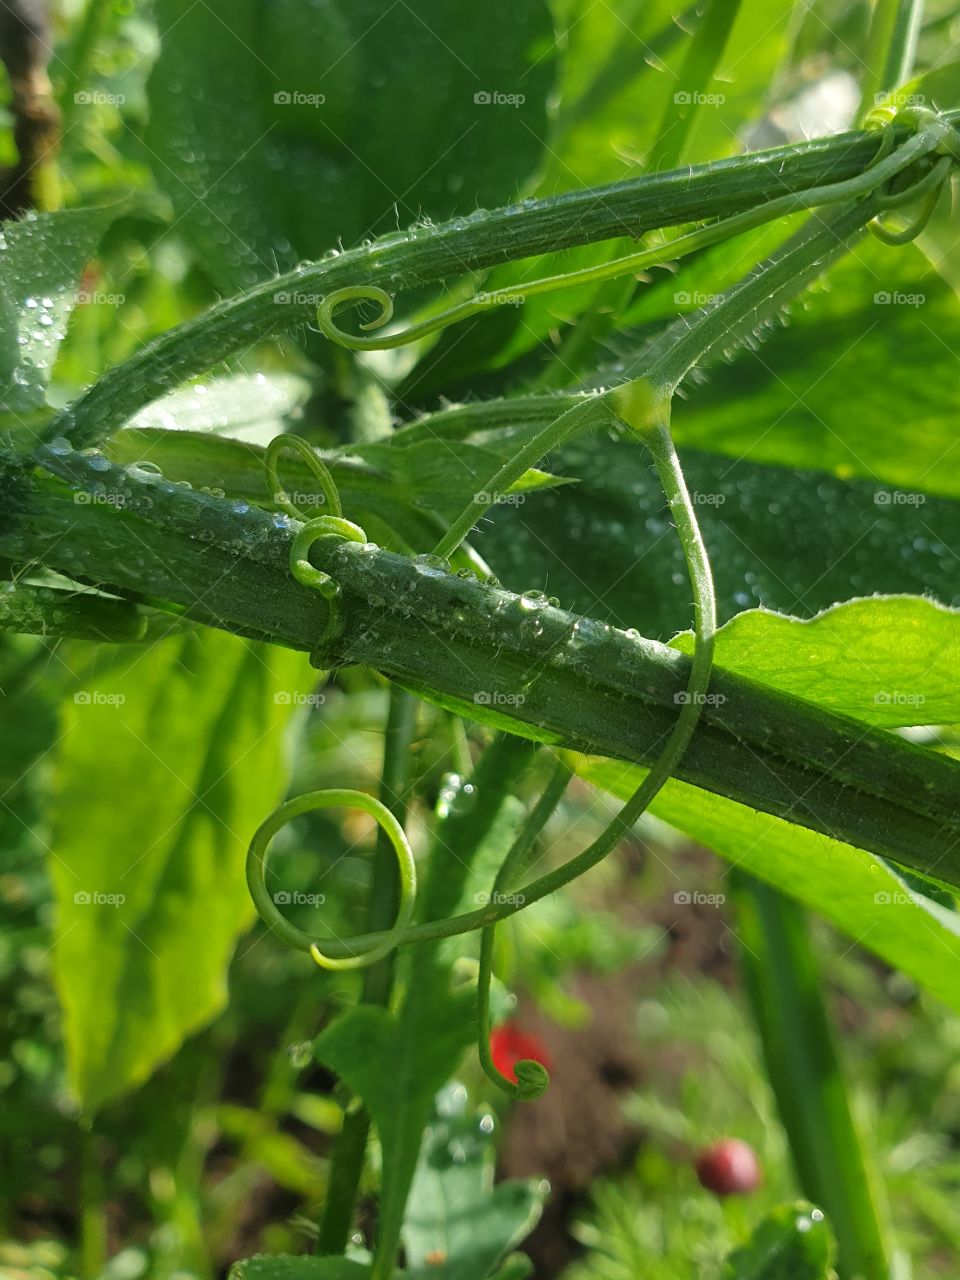 Dew in my green garden.